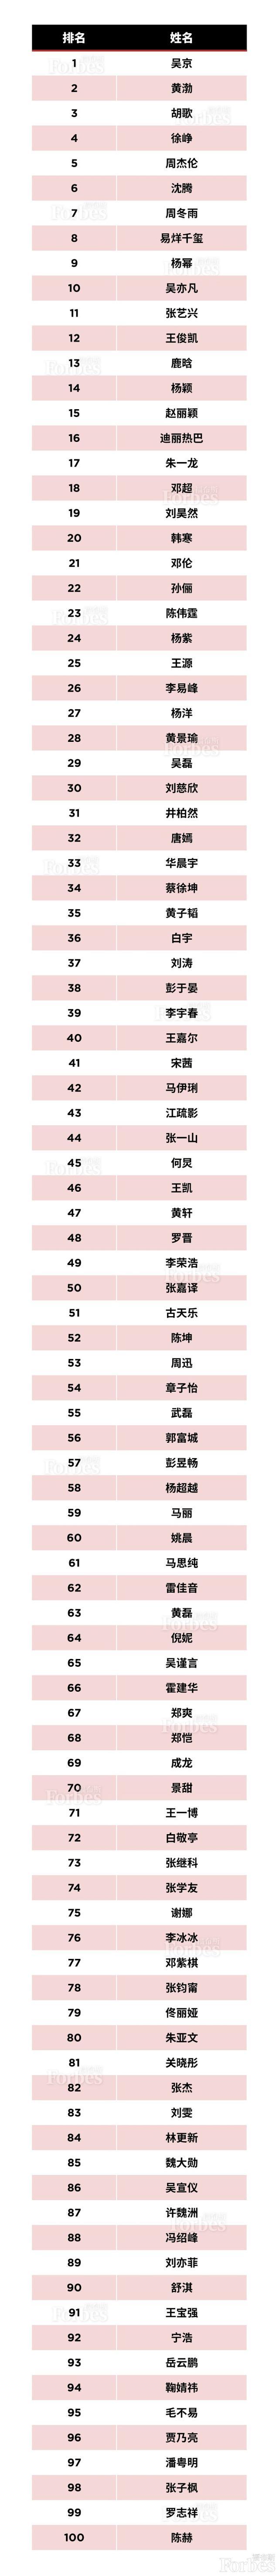 福布斯中国100名人榜:武磊力压杨超越排名第55位